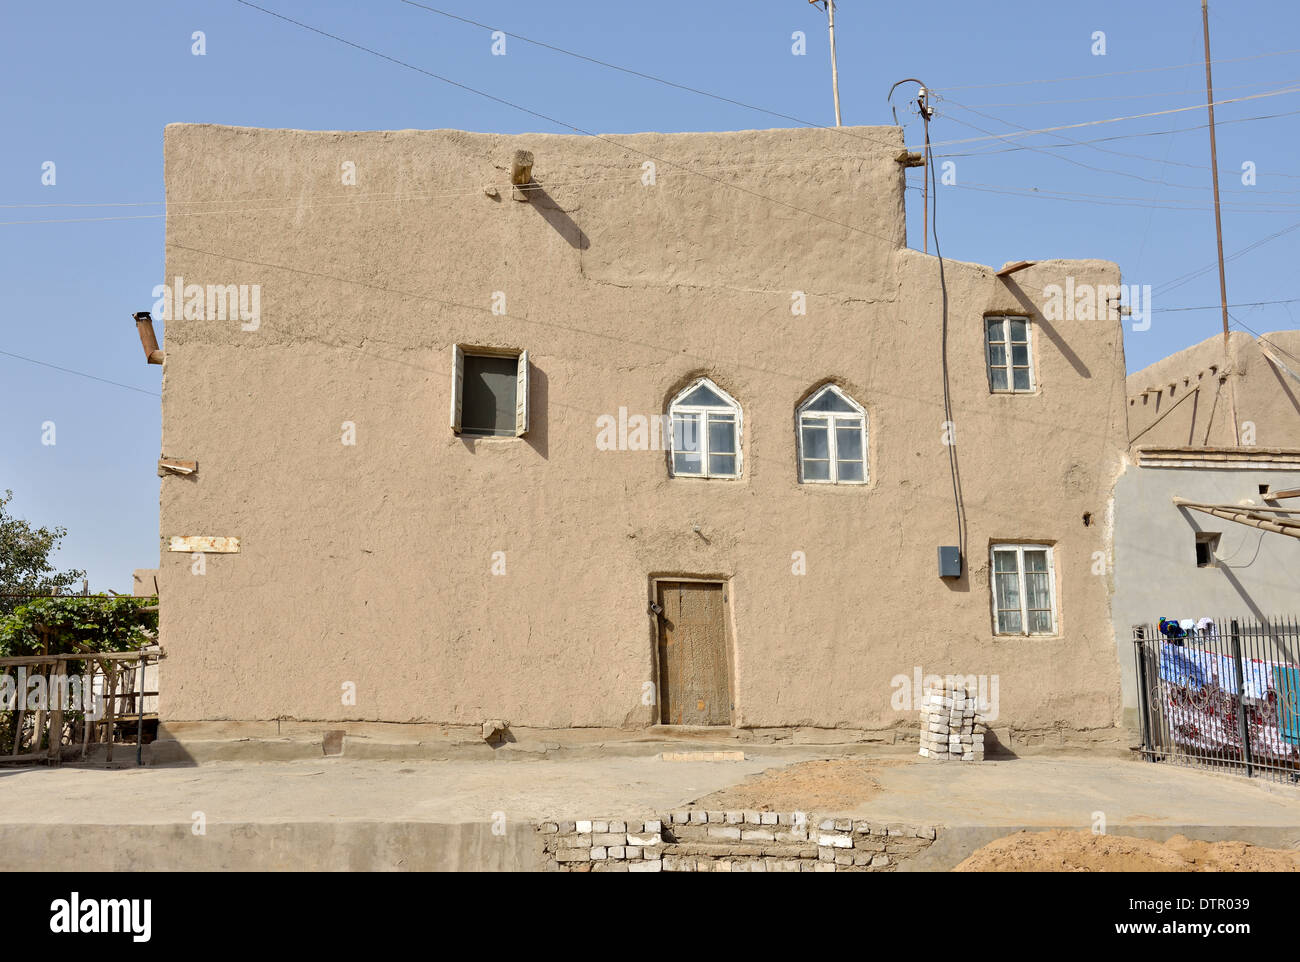 Maison de terre, Ichon-Qala (vieille ville), Khiva, Ouzbékistan Banque D'Images